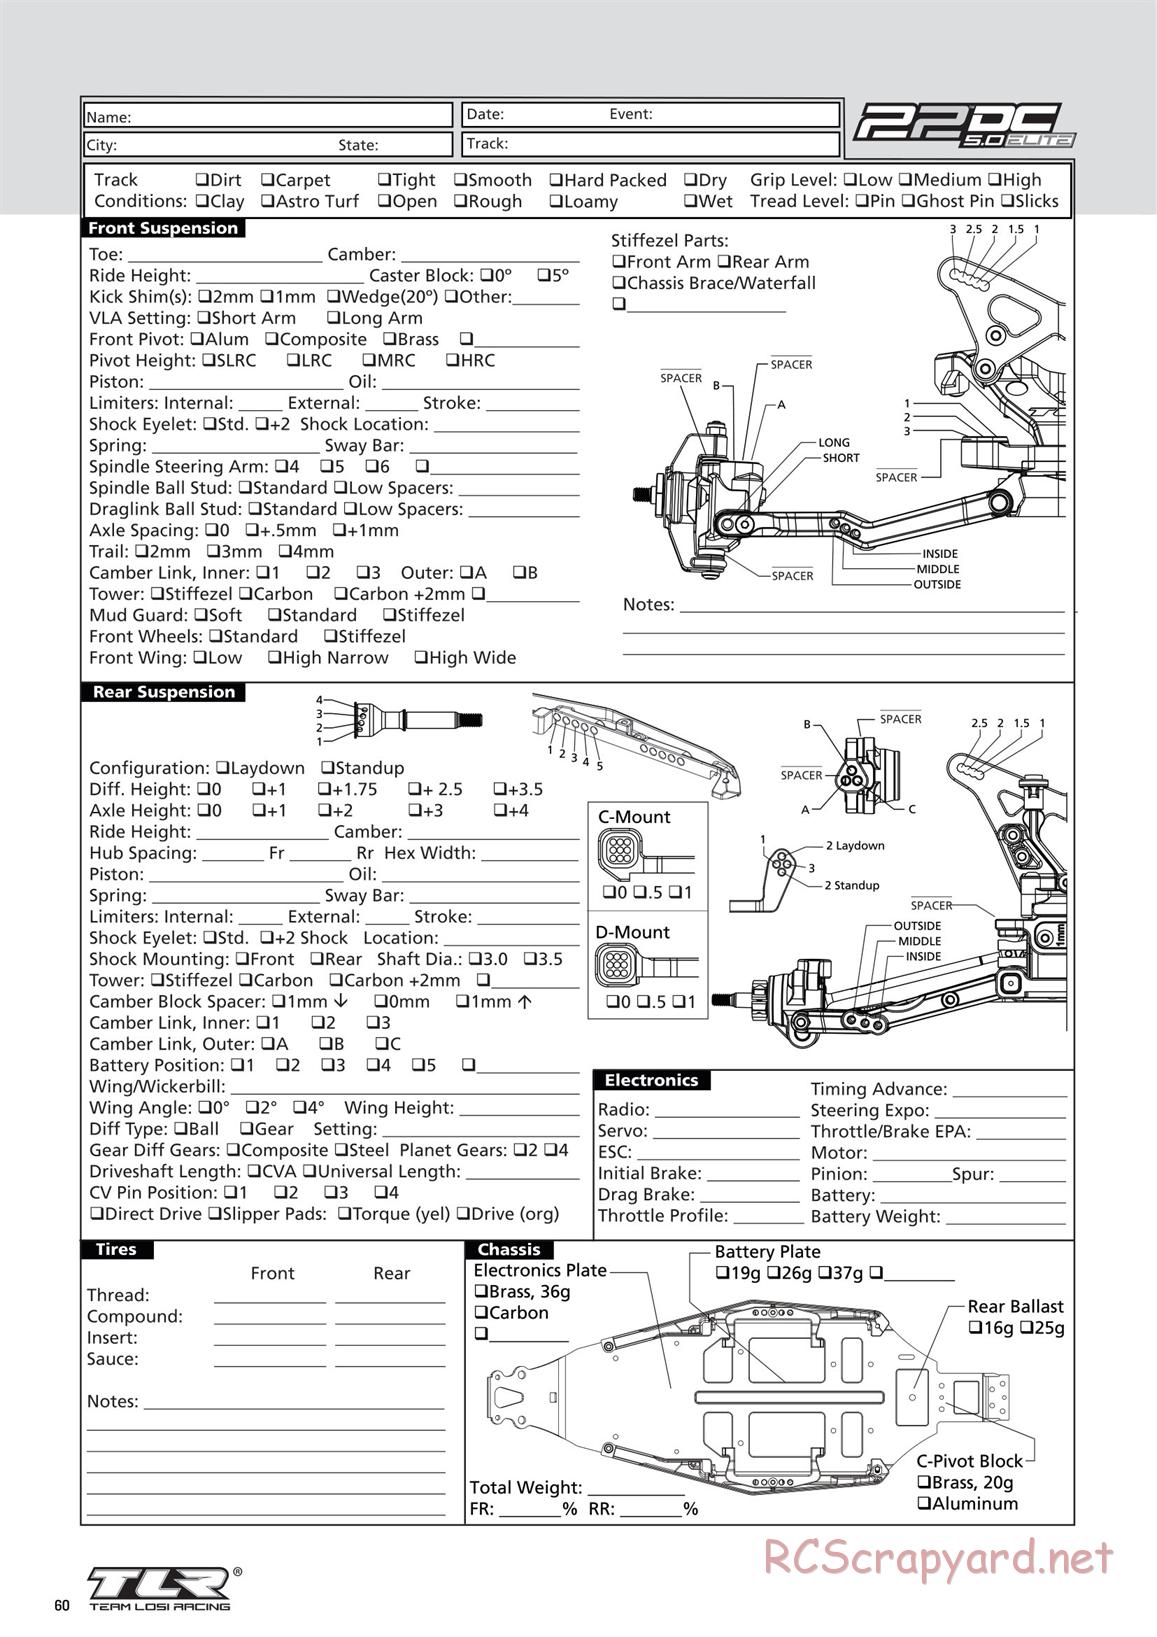 Team Losi - TLR 22 5.0 DC Elite Race - Manual - Page 60